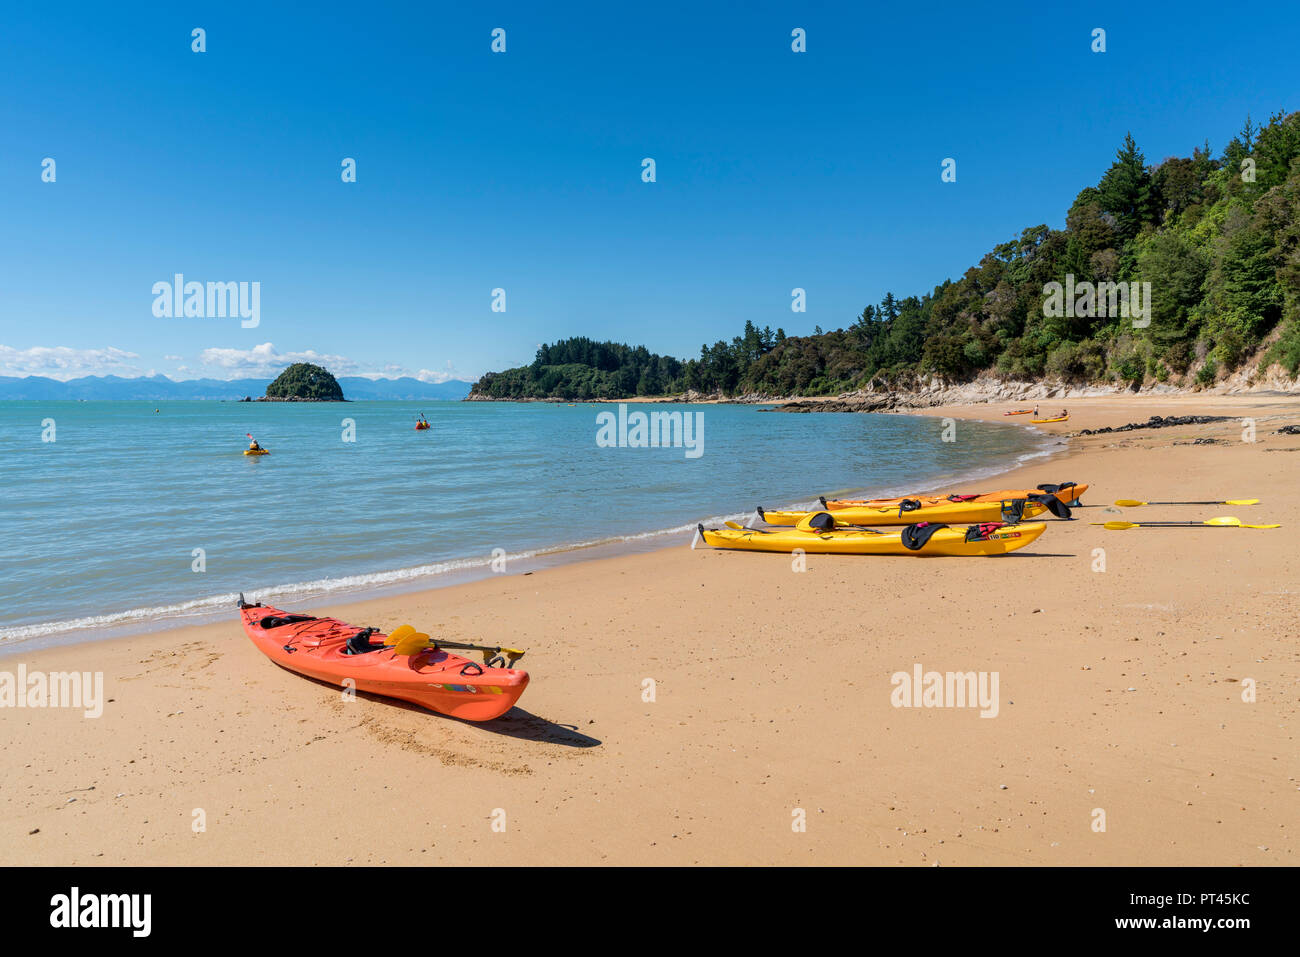 Kayaks on Split Apple Rock Beach, Kaiteriteri, Tasman region, South Island, New Zealand, Stock Photo